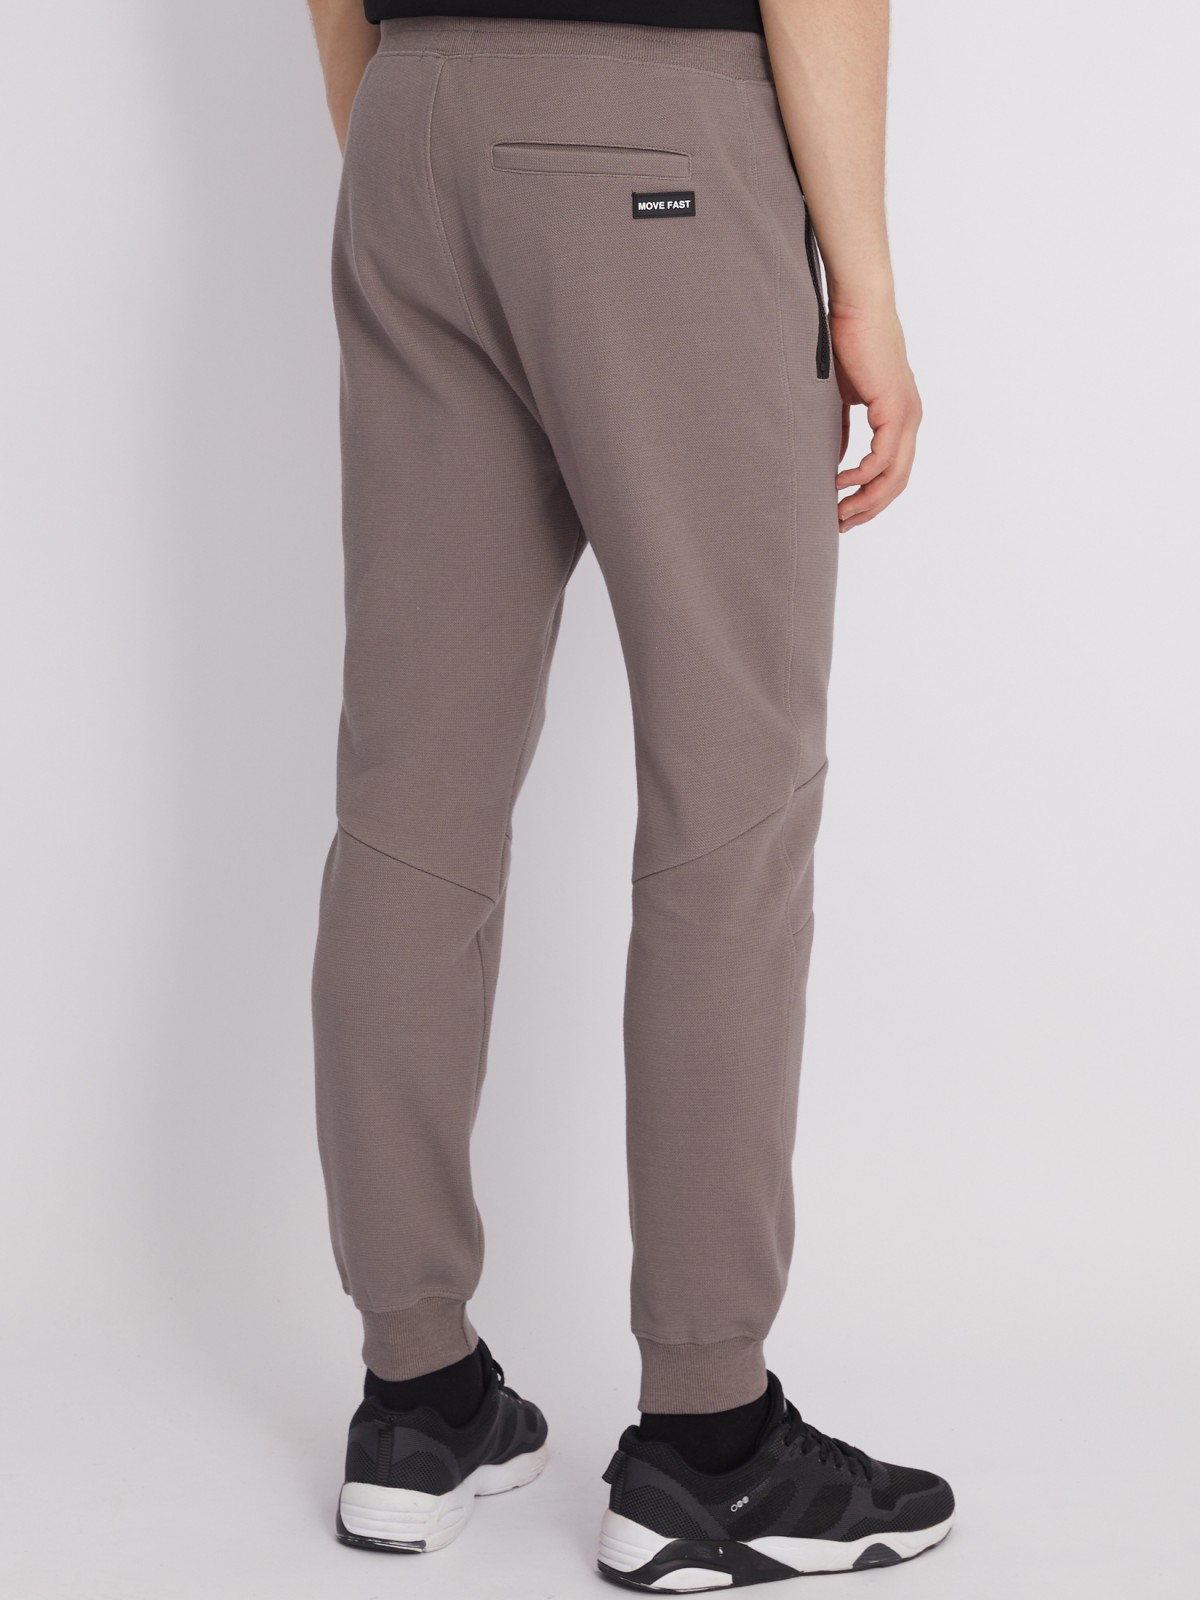 Трикотажные брюки-джоггеры в спортивном стиле zolla 213317679023, цвет коричневый, размер S - фото 6